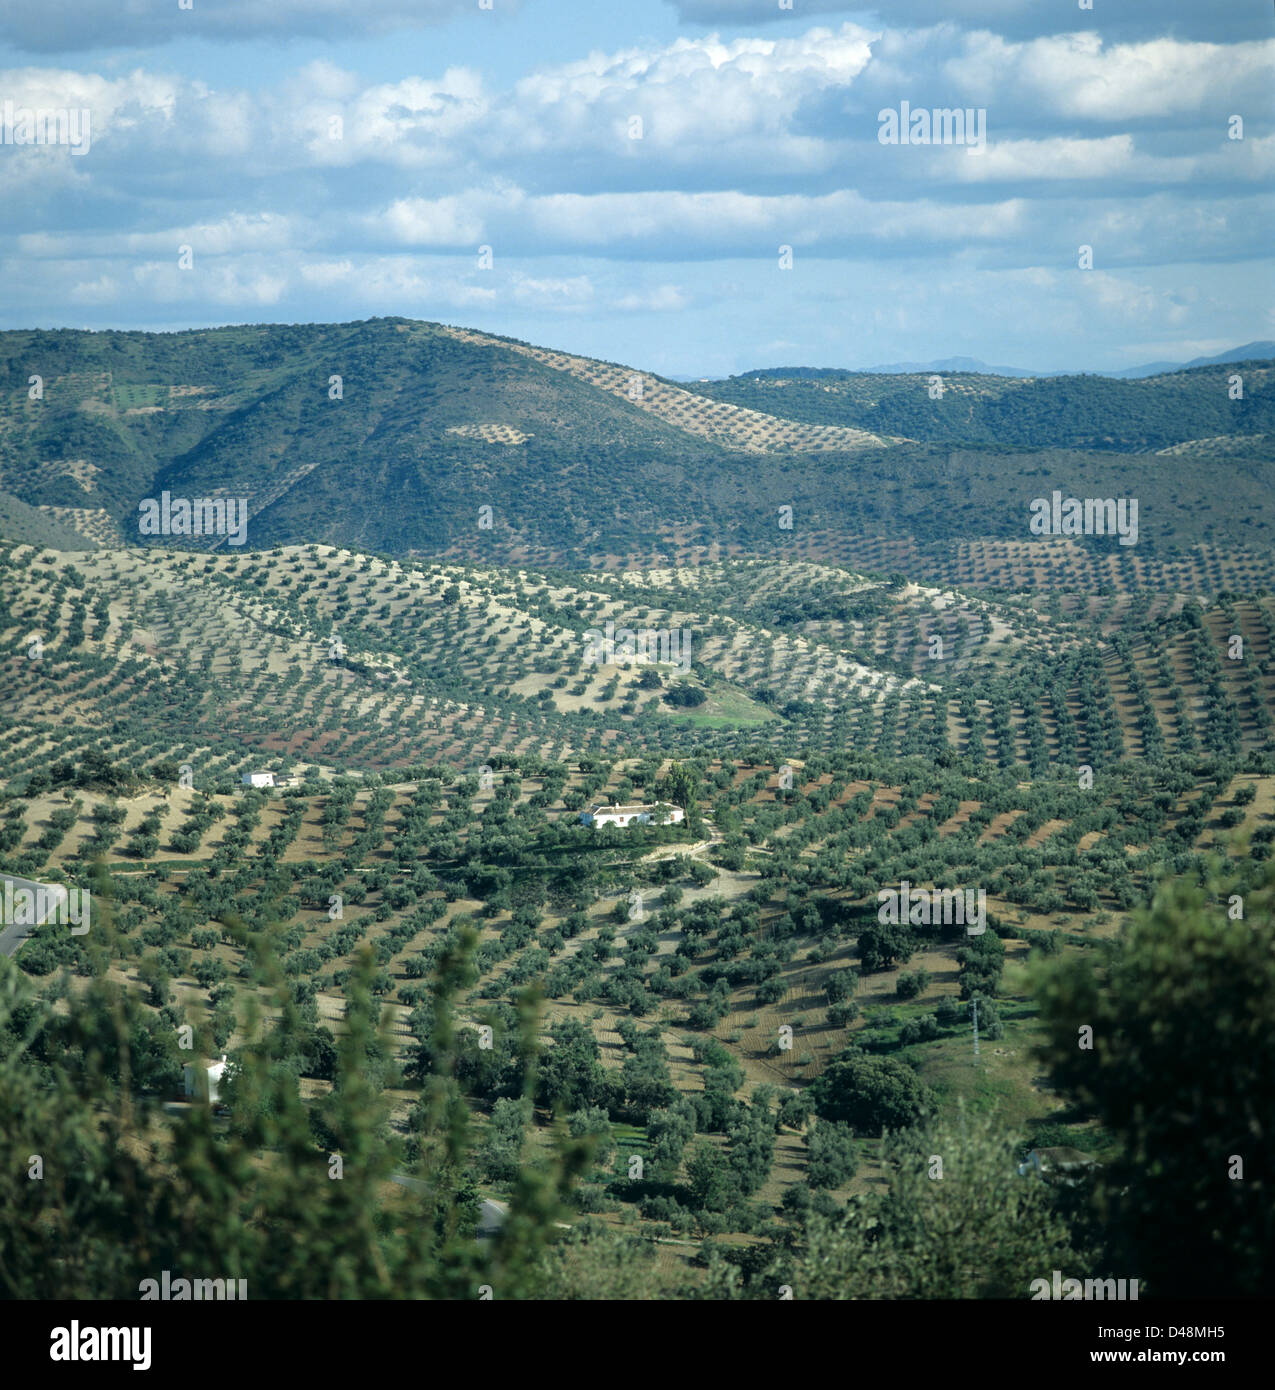 Increíbles vistas de colinas onduladas con filas de olivos en las tierras agrícolas en Andalucía, España Foto de stock